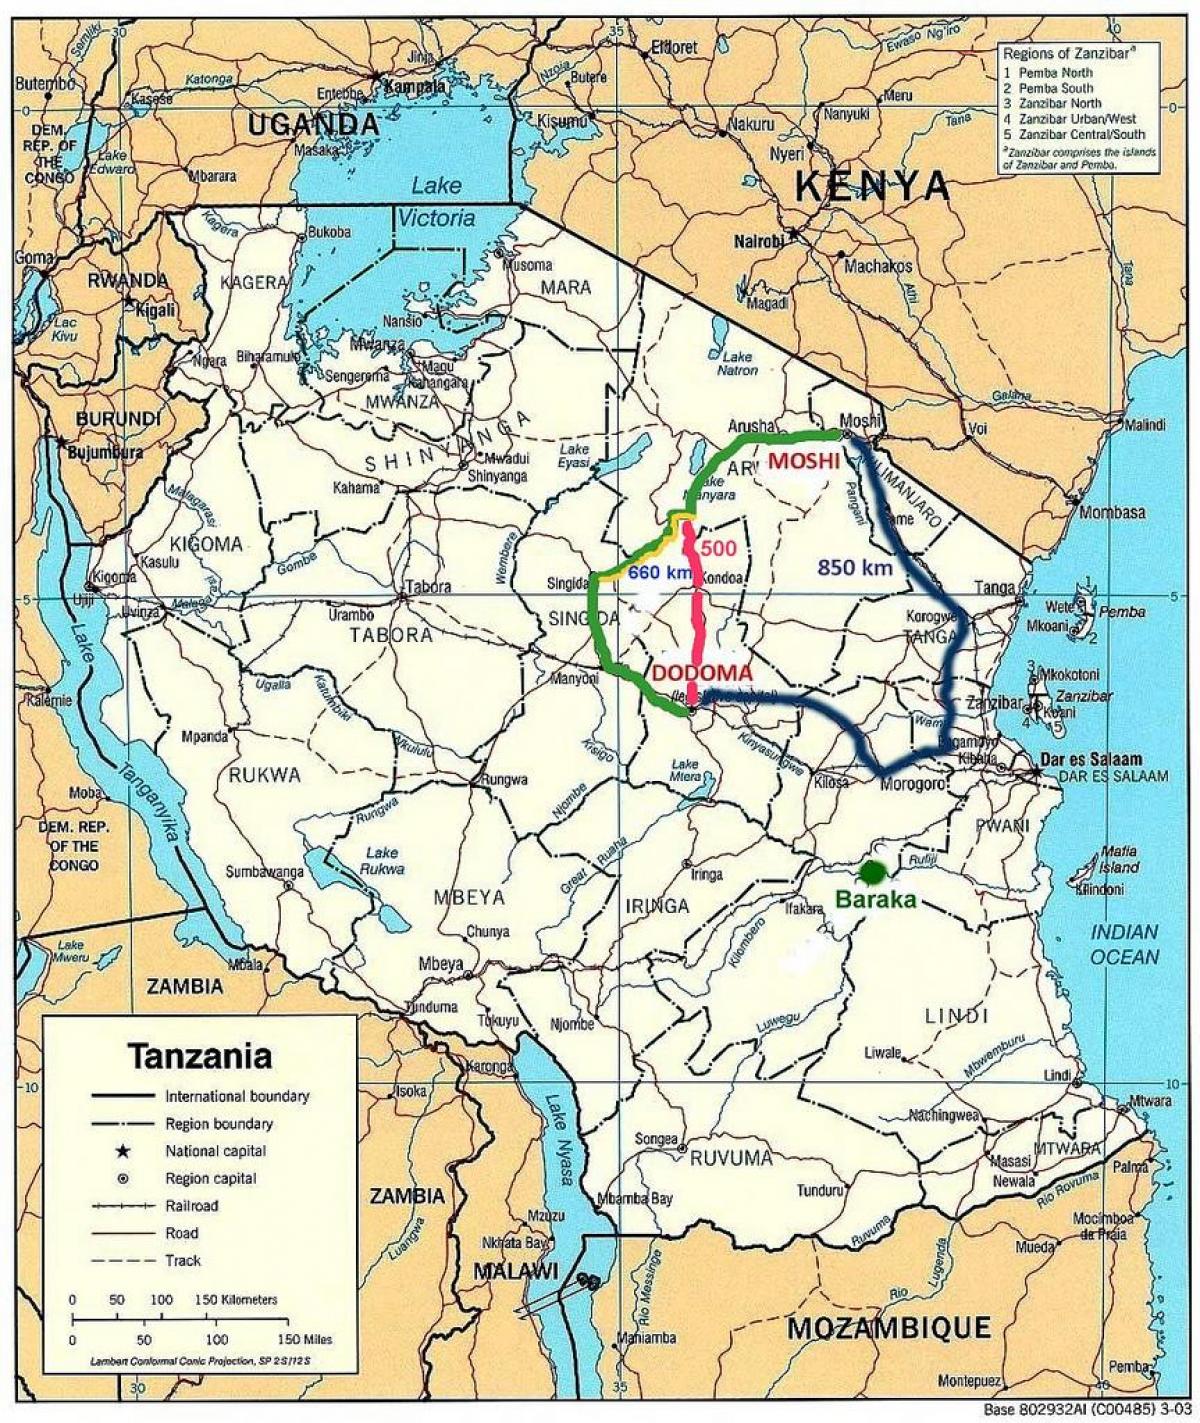 ტანზანიის საგზაო ქსელის რუკა